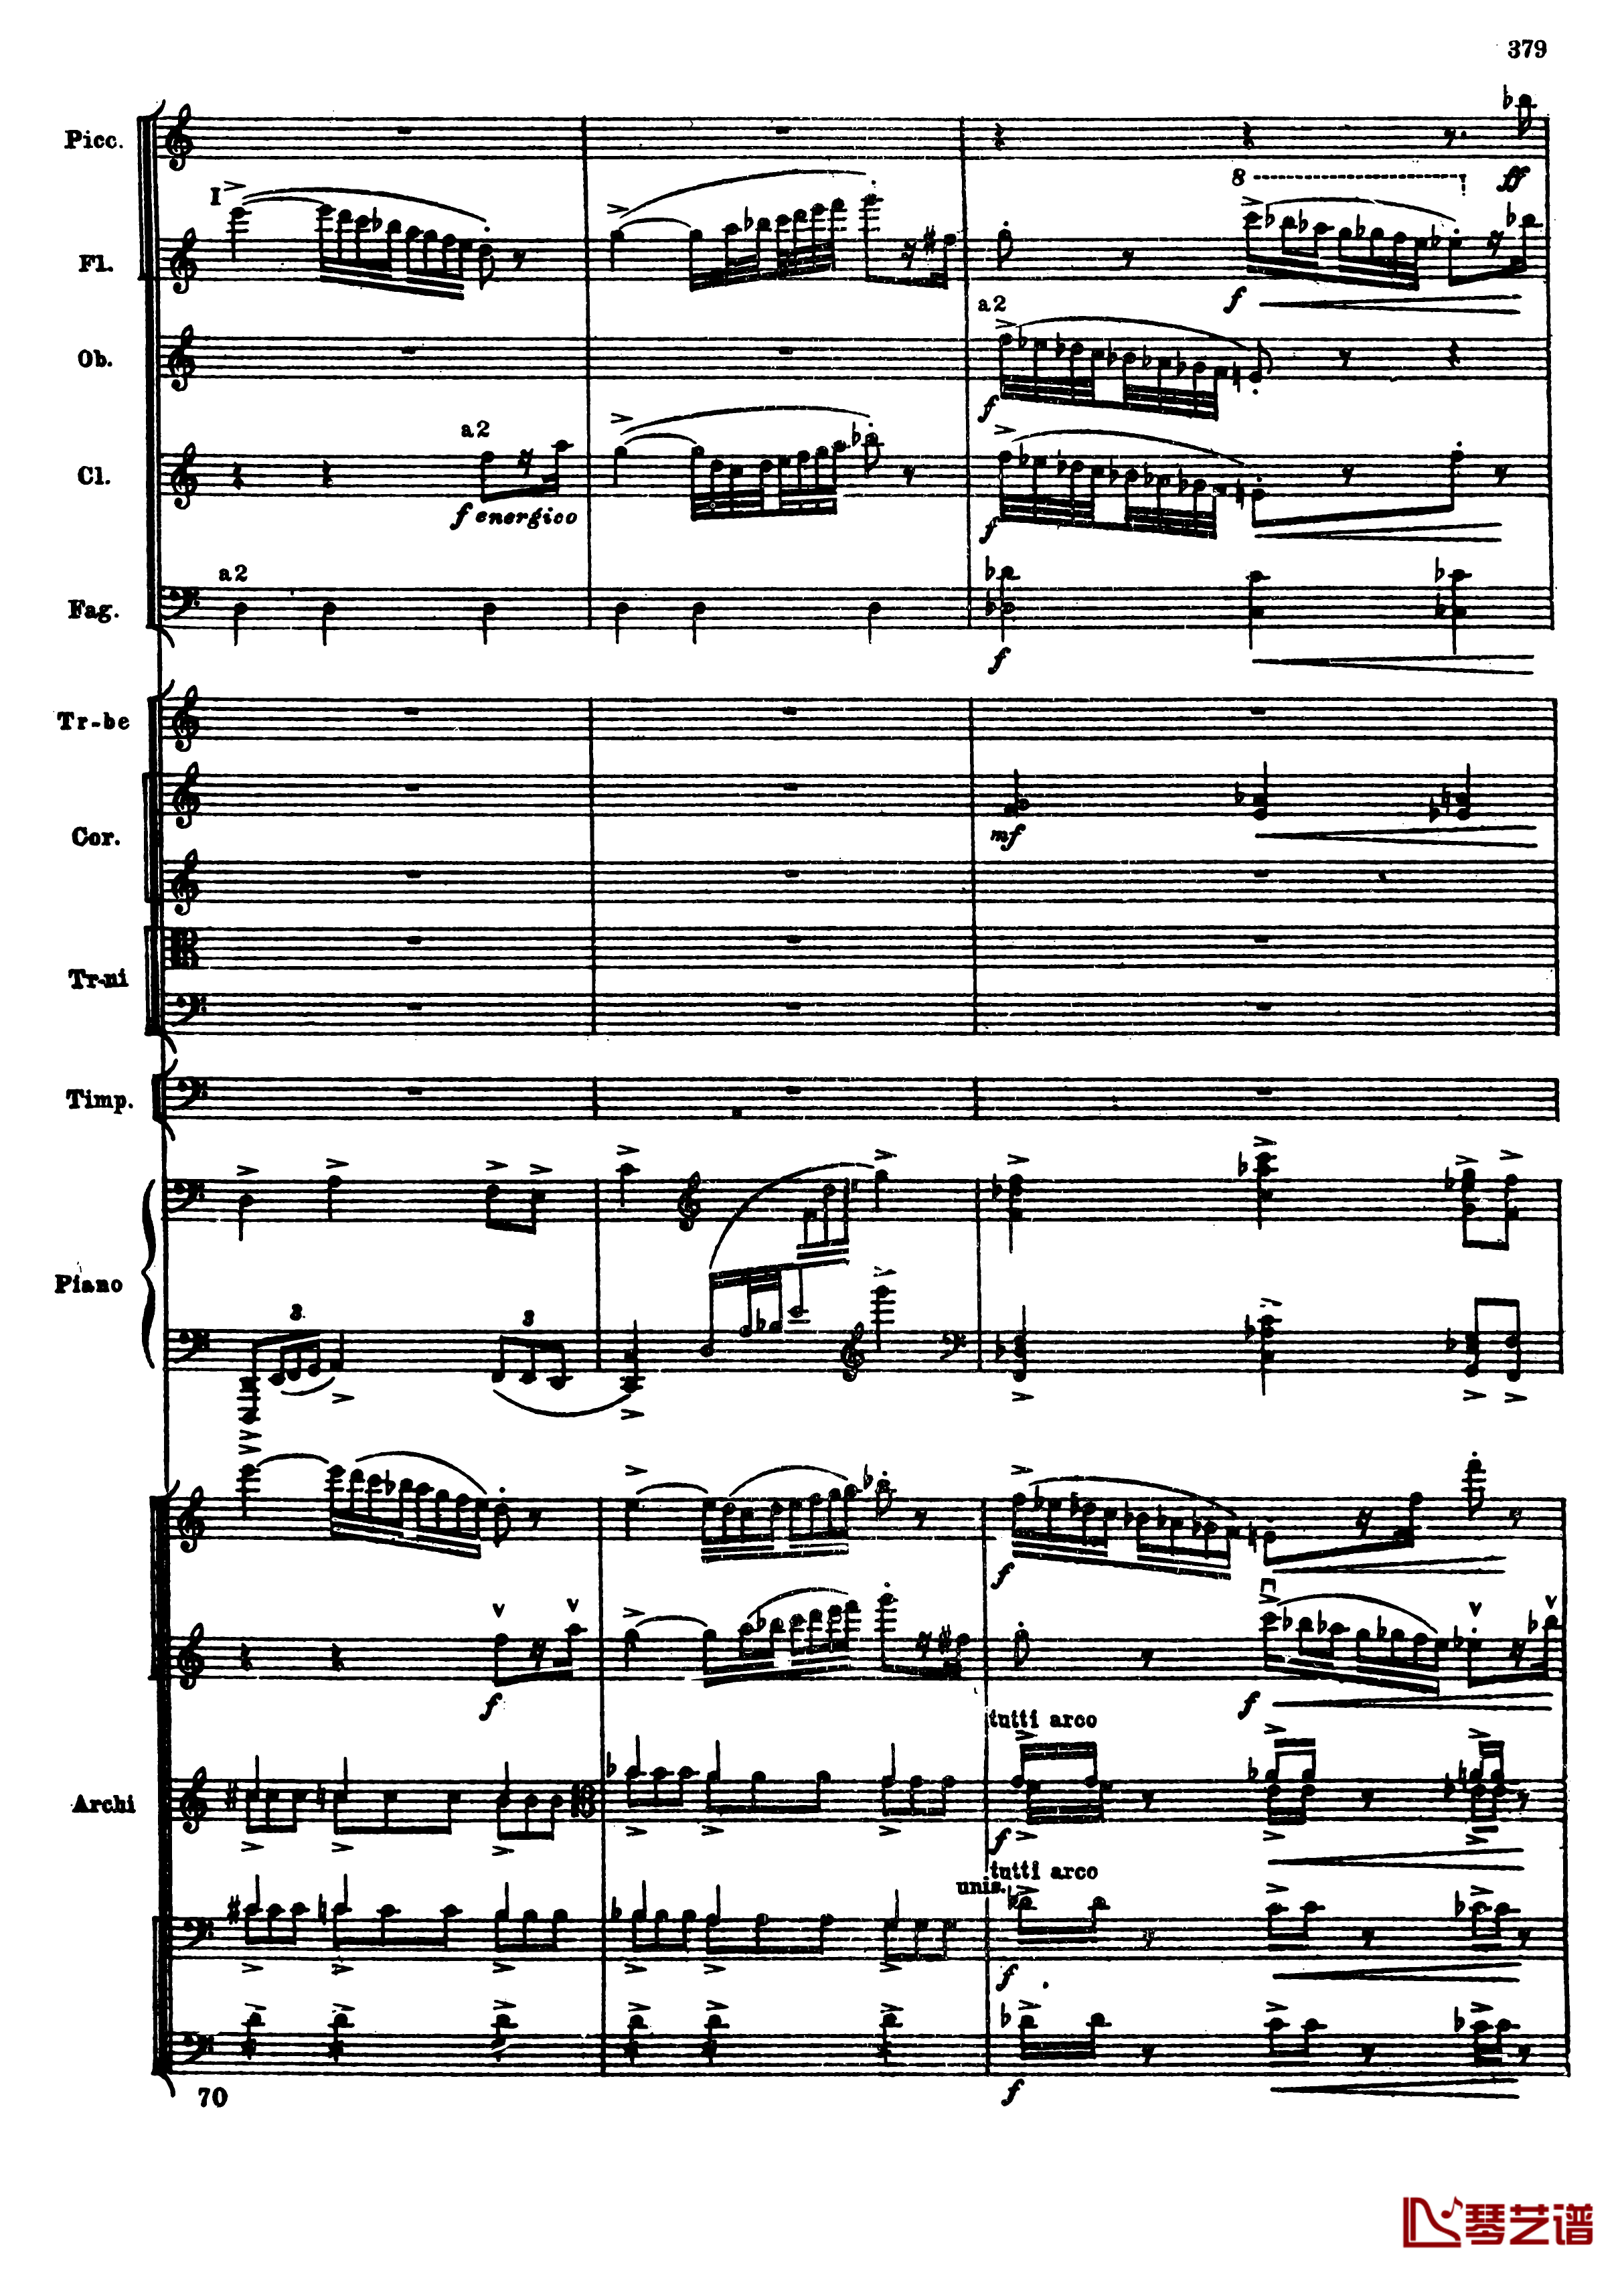 普罗科菲耶夫第三钢琴协奏曲钢琴谱-总谱-普罗科非耶夫111